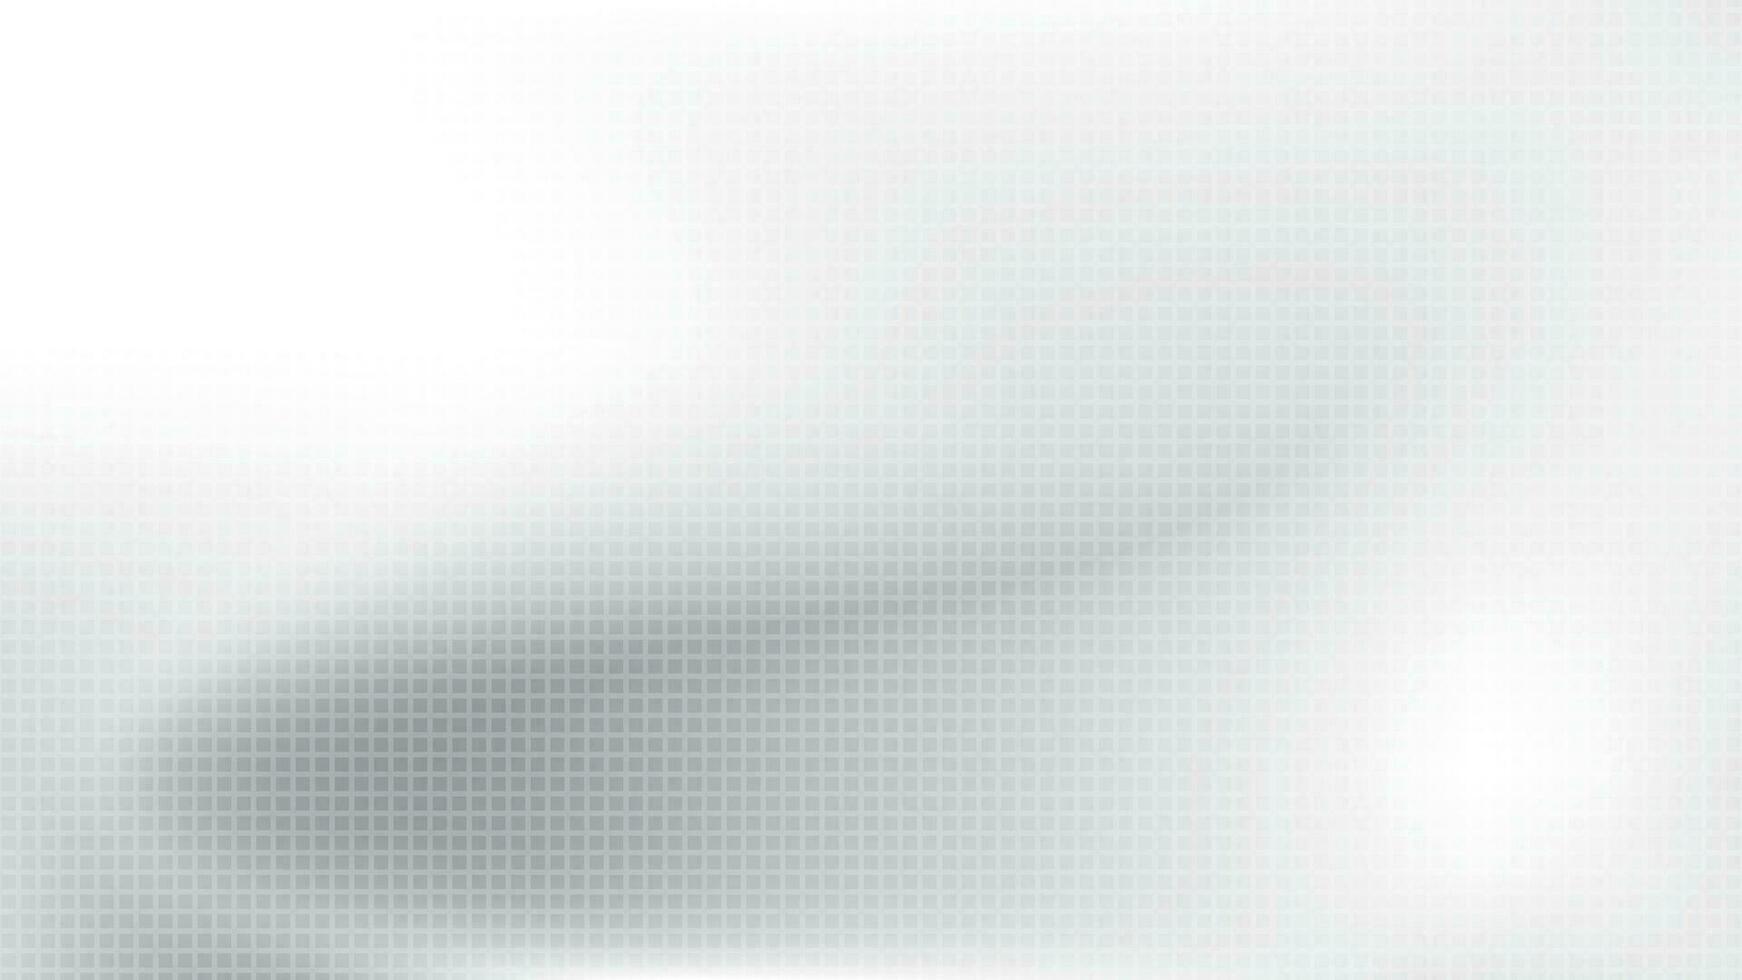 abstract wit en grijs helling achtergrond met rechthoek patroon. vector illustratie.